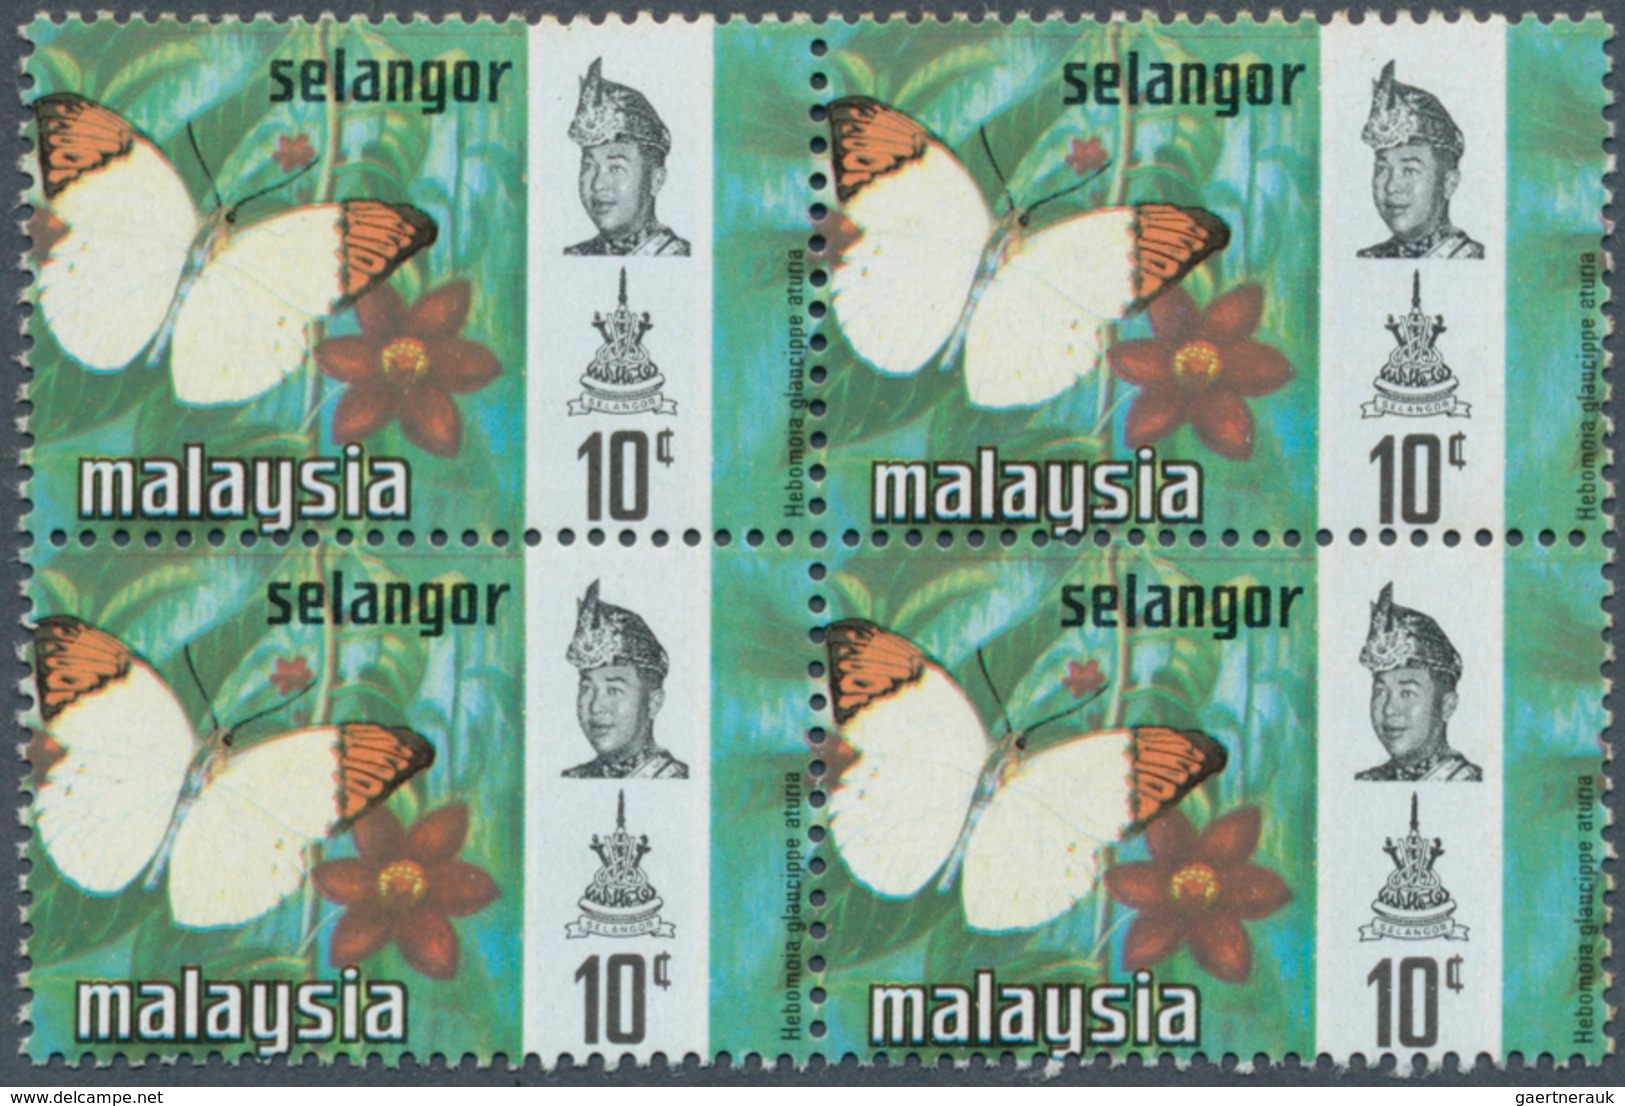 07395 Malaiische Staaten - Selangor: 1971, 10c. Great Orange Tip, Block Of Four With Peforation Shift, Min - Selangor